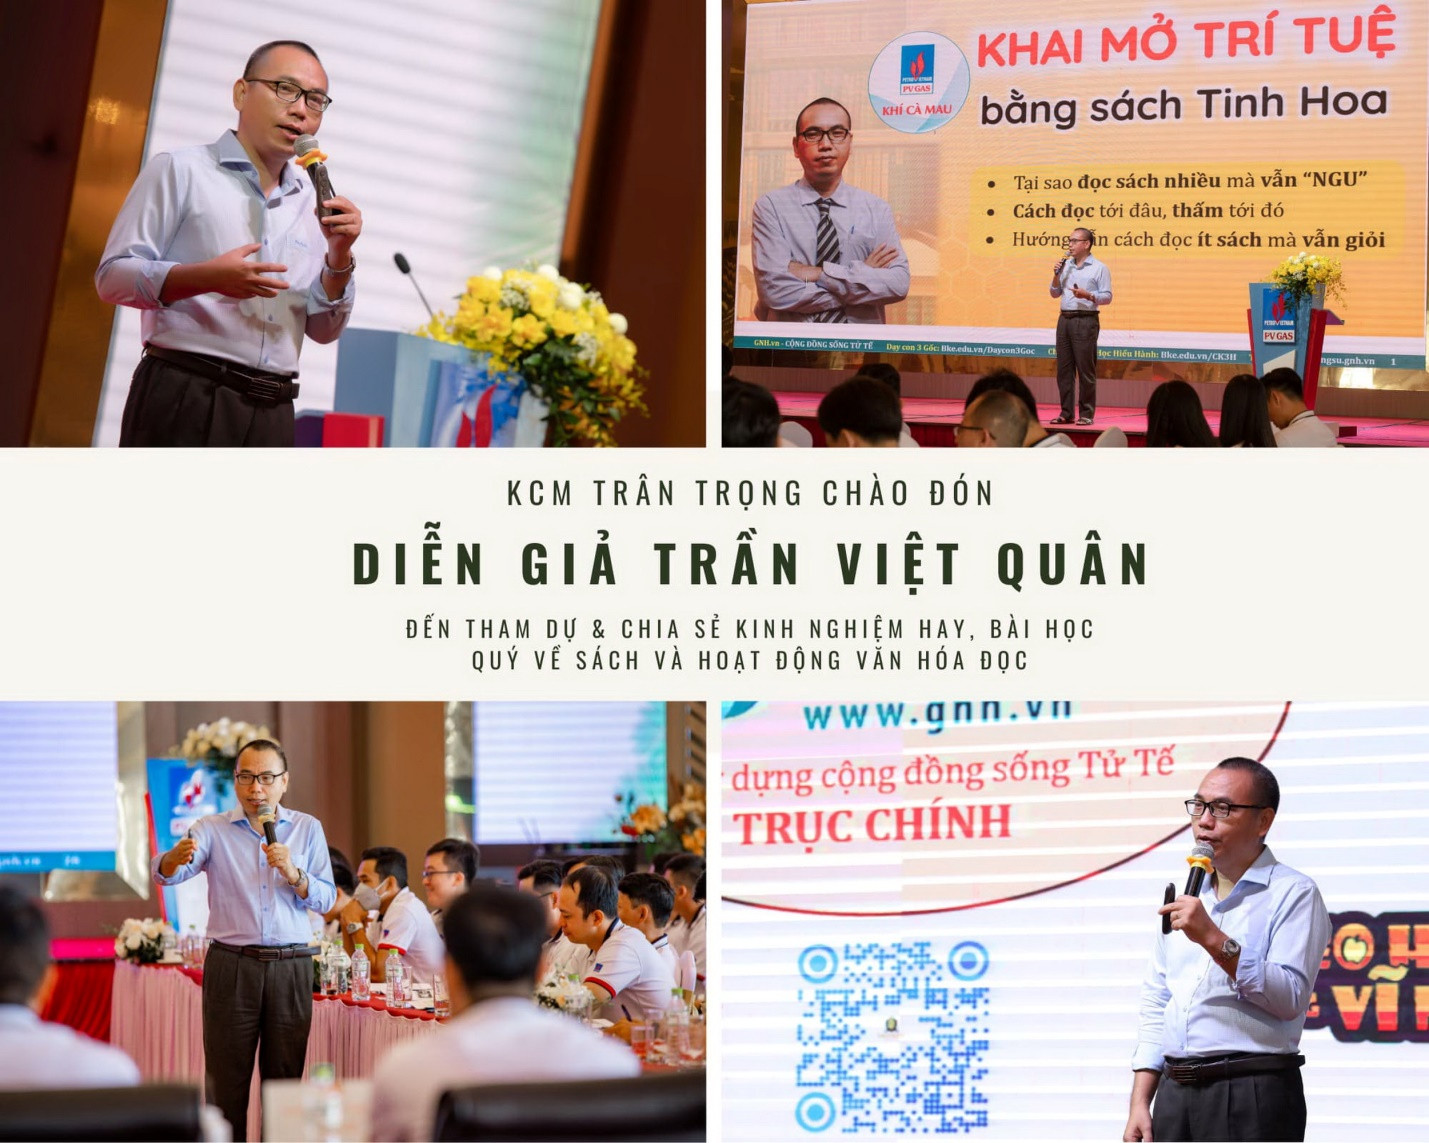 Diễn giả Trần Việt Quân đã có bài chia sẻ “Khai mở trí tuệ bằng Sách tinh hoa” tại Diễn đàn văn hóa đọc của KCM.